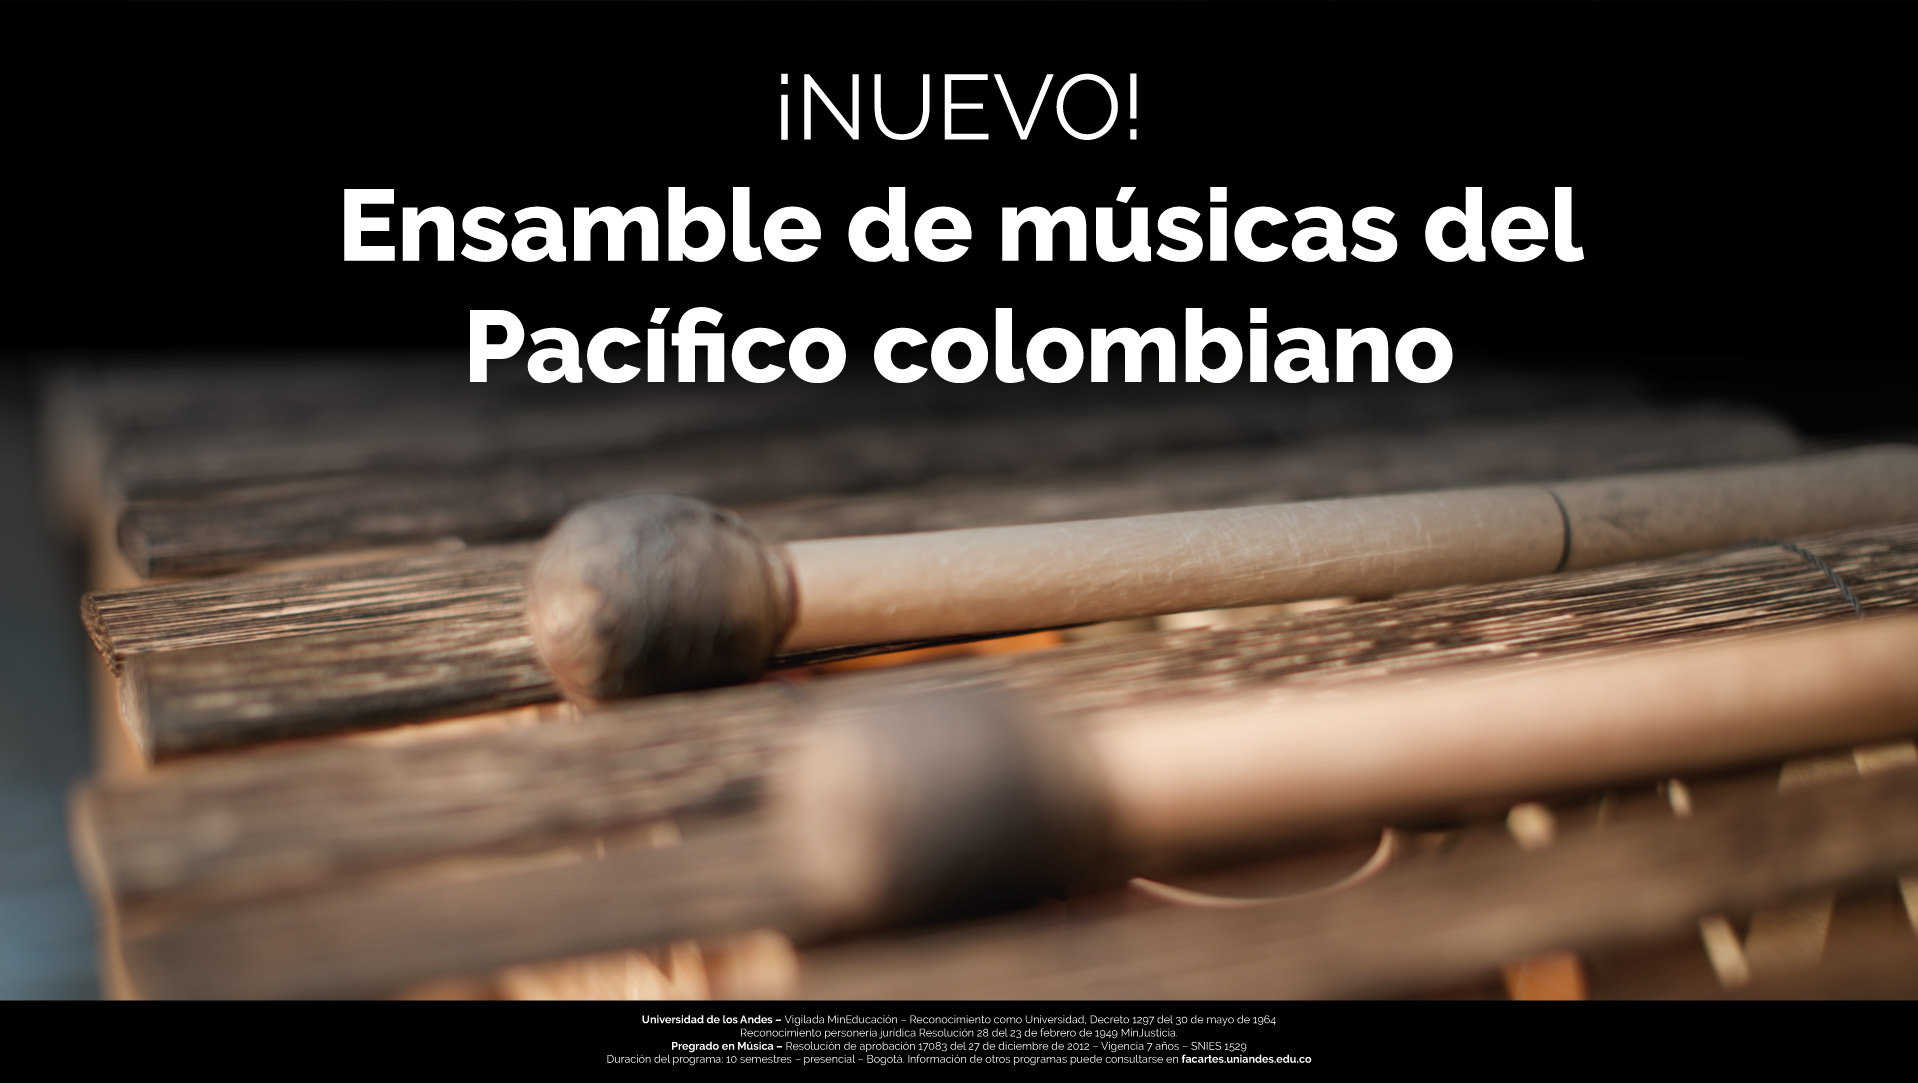 Convocatoria: Ensamble de músicas del Pacífico colombiano